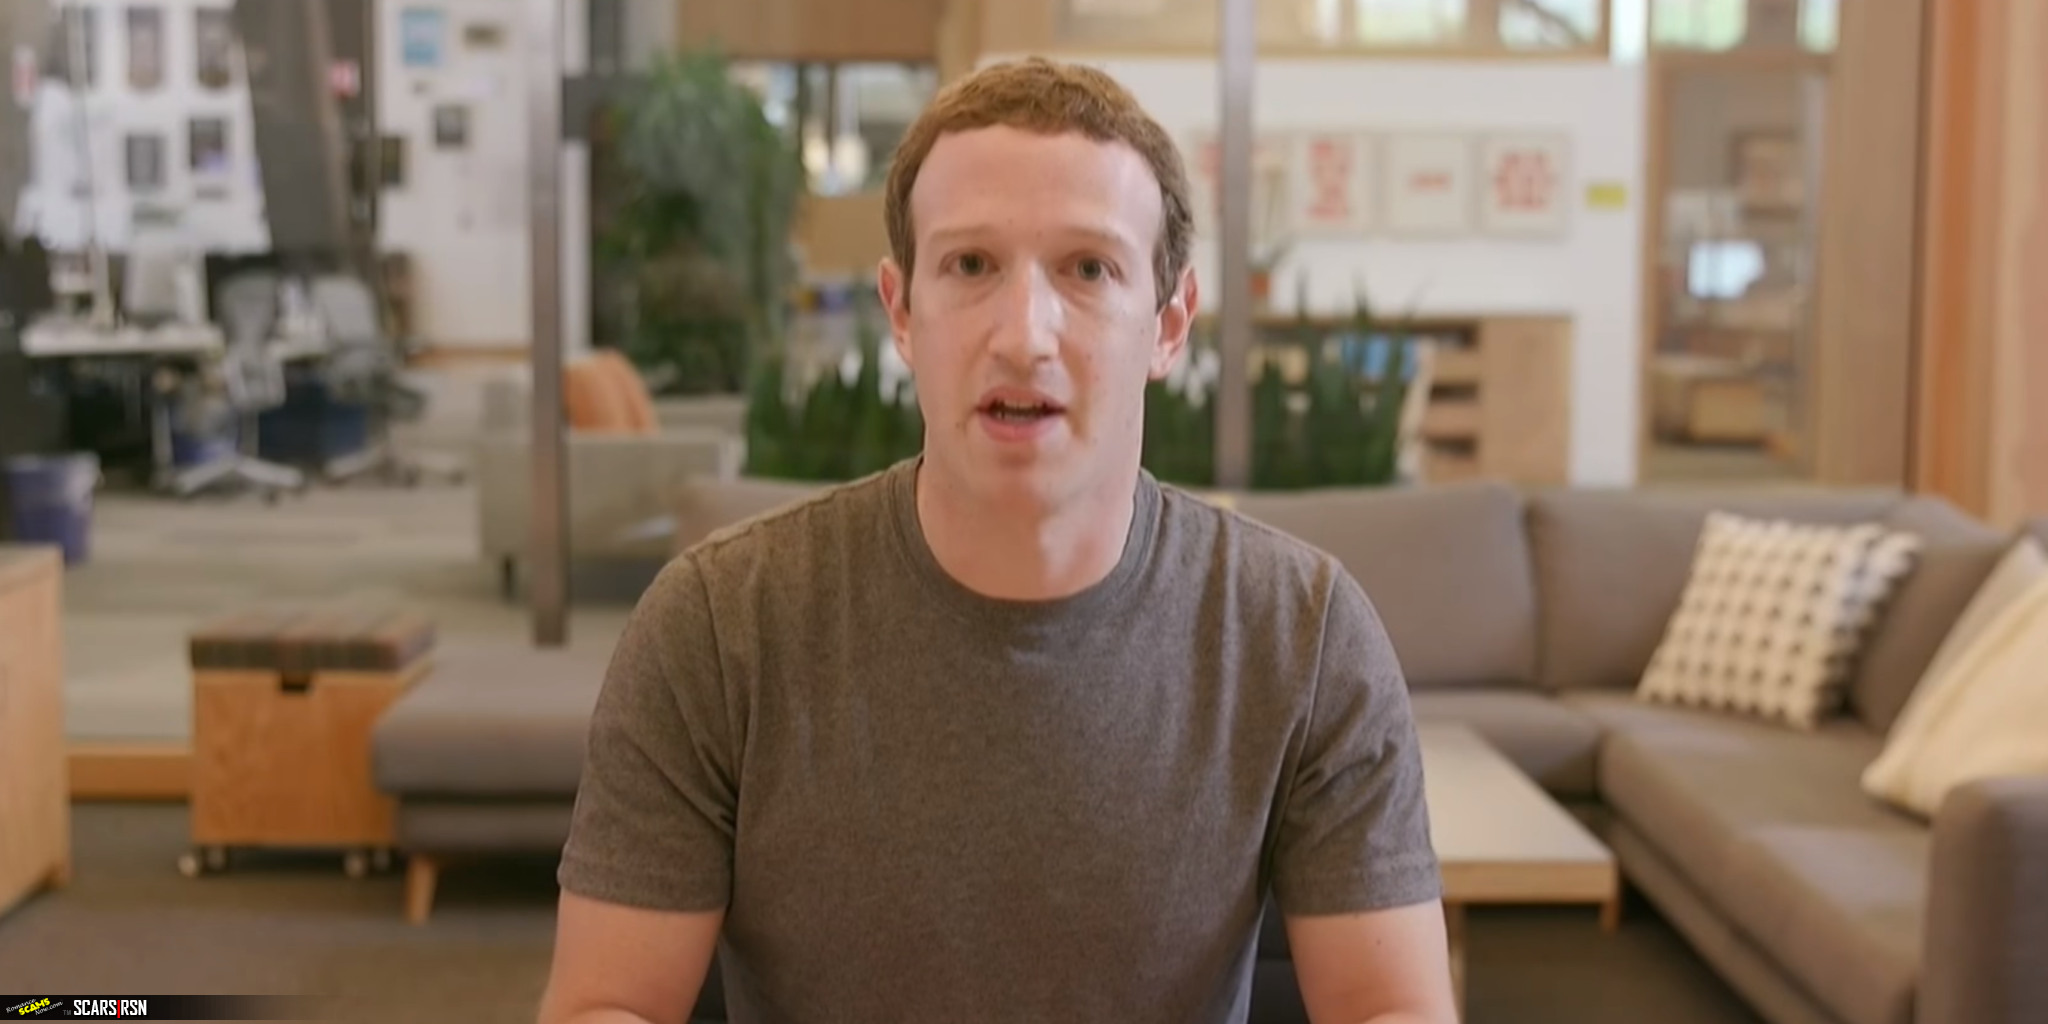 Mark Zuckerberg has 270 million fakes